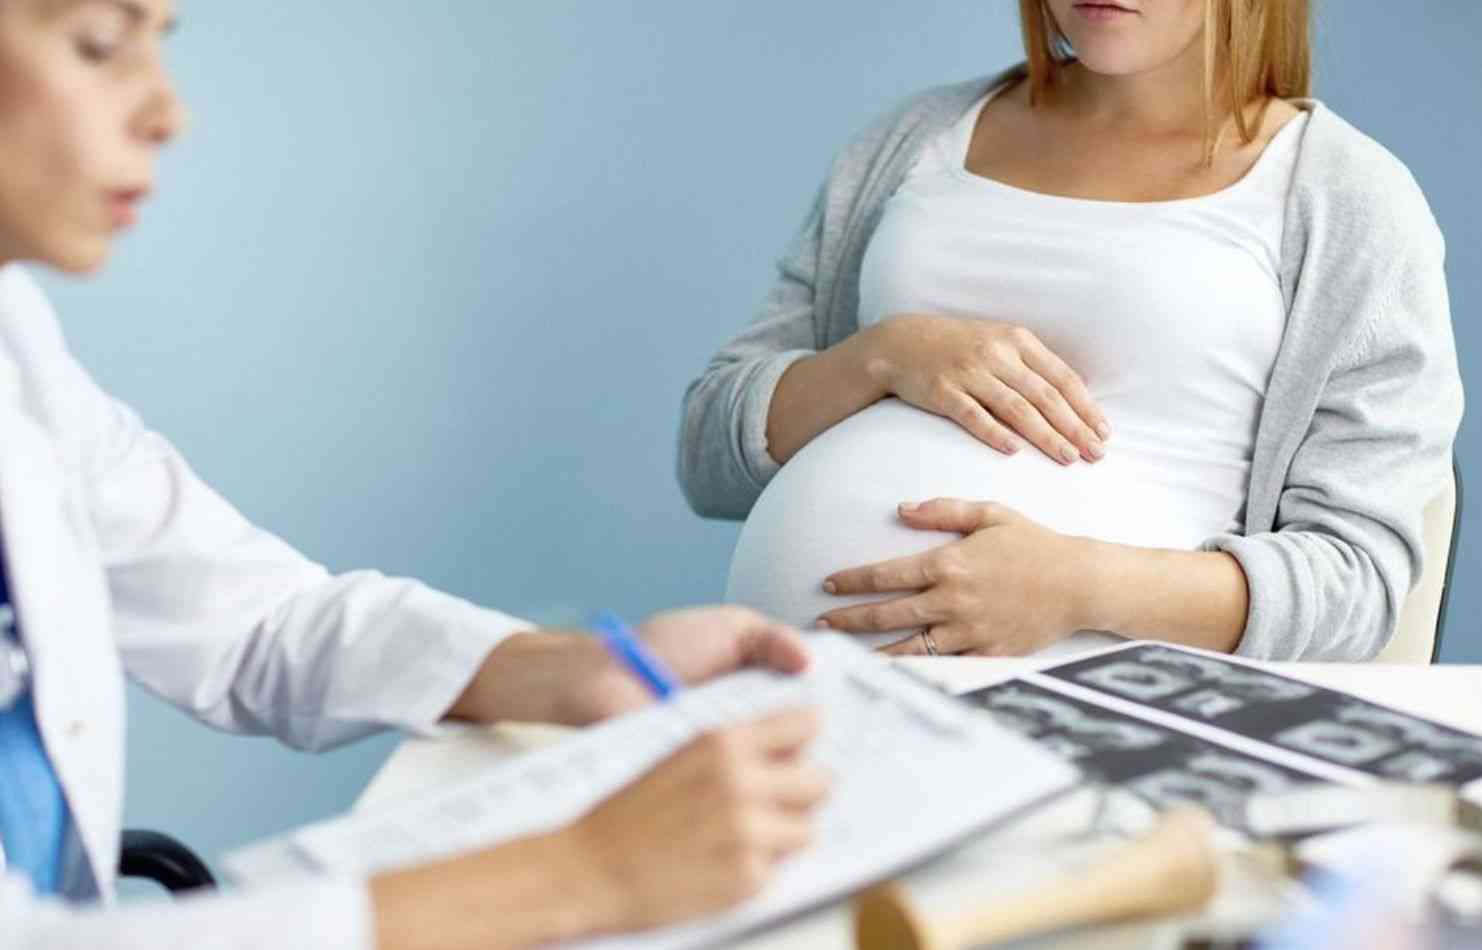 怀孕白细胞偏高可能是因为感染导致